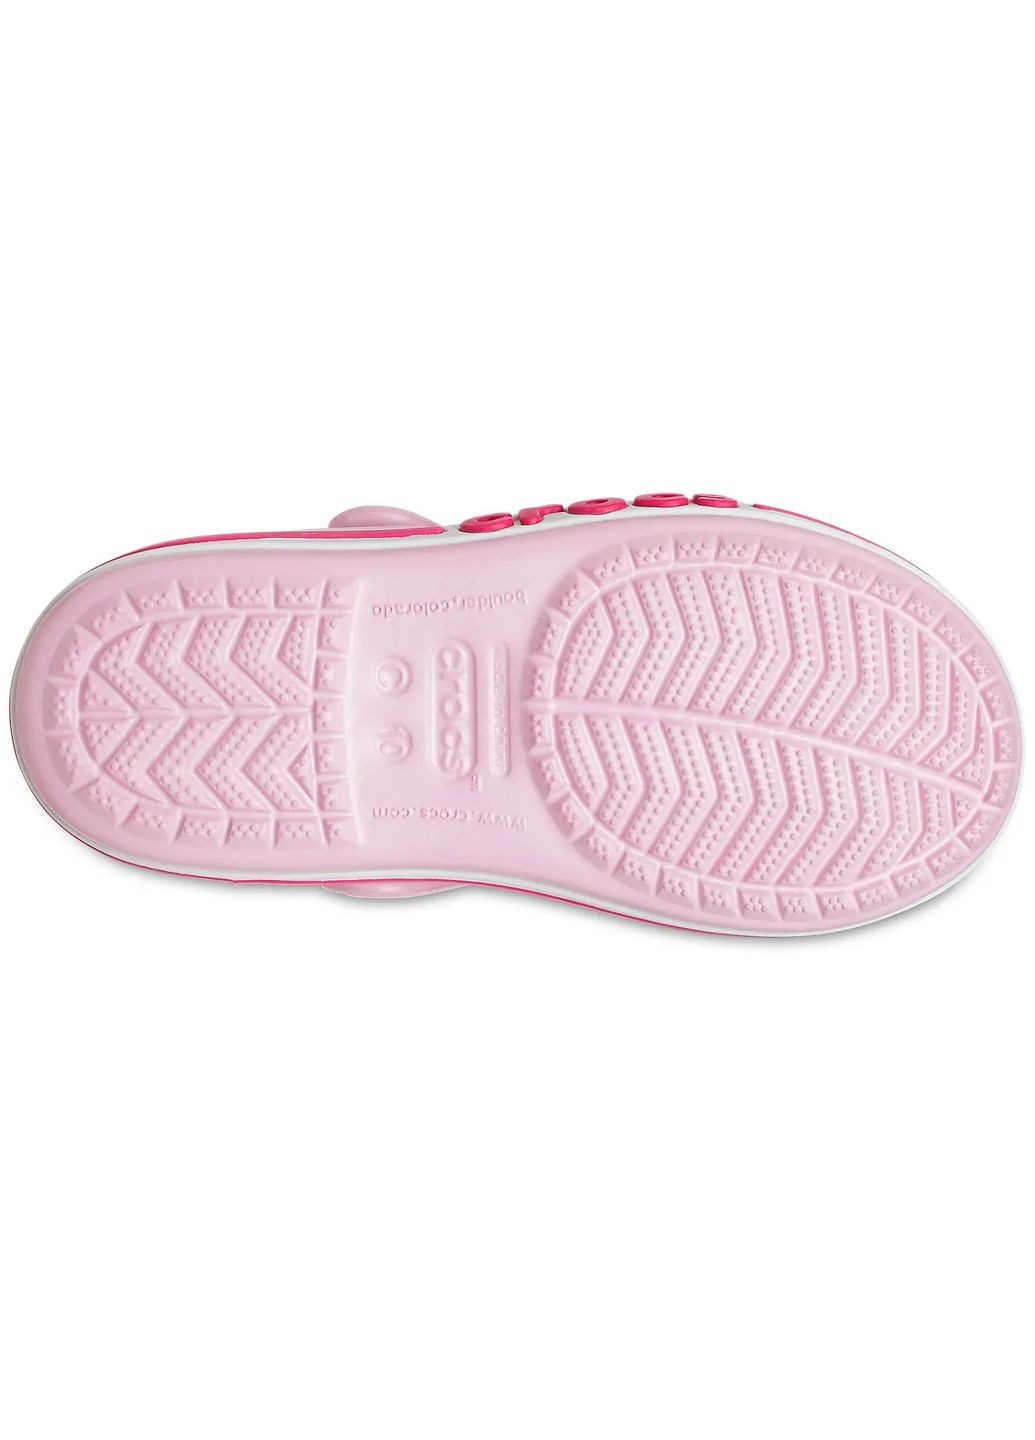 Розовые повседневные сандалии bayaband sandal 10-27-17.5 см ballerina pink 205400 Crocs